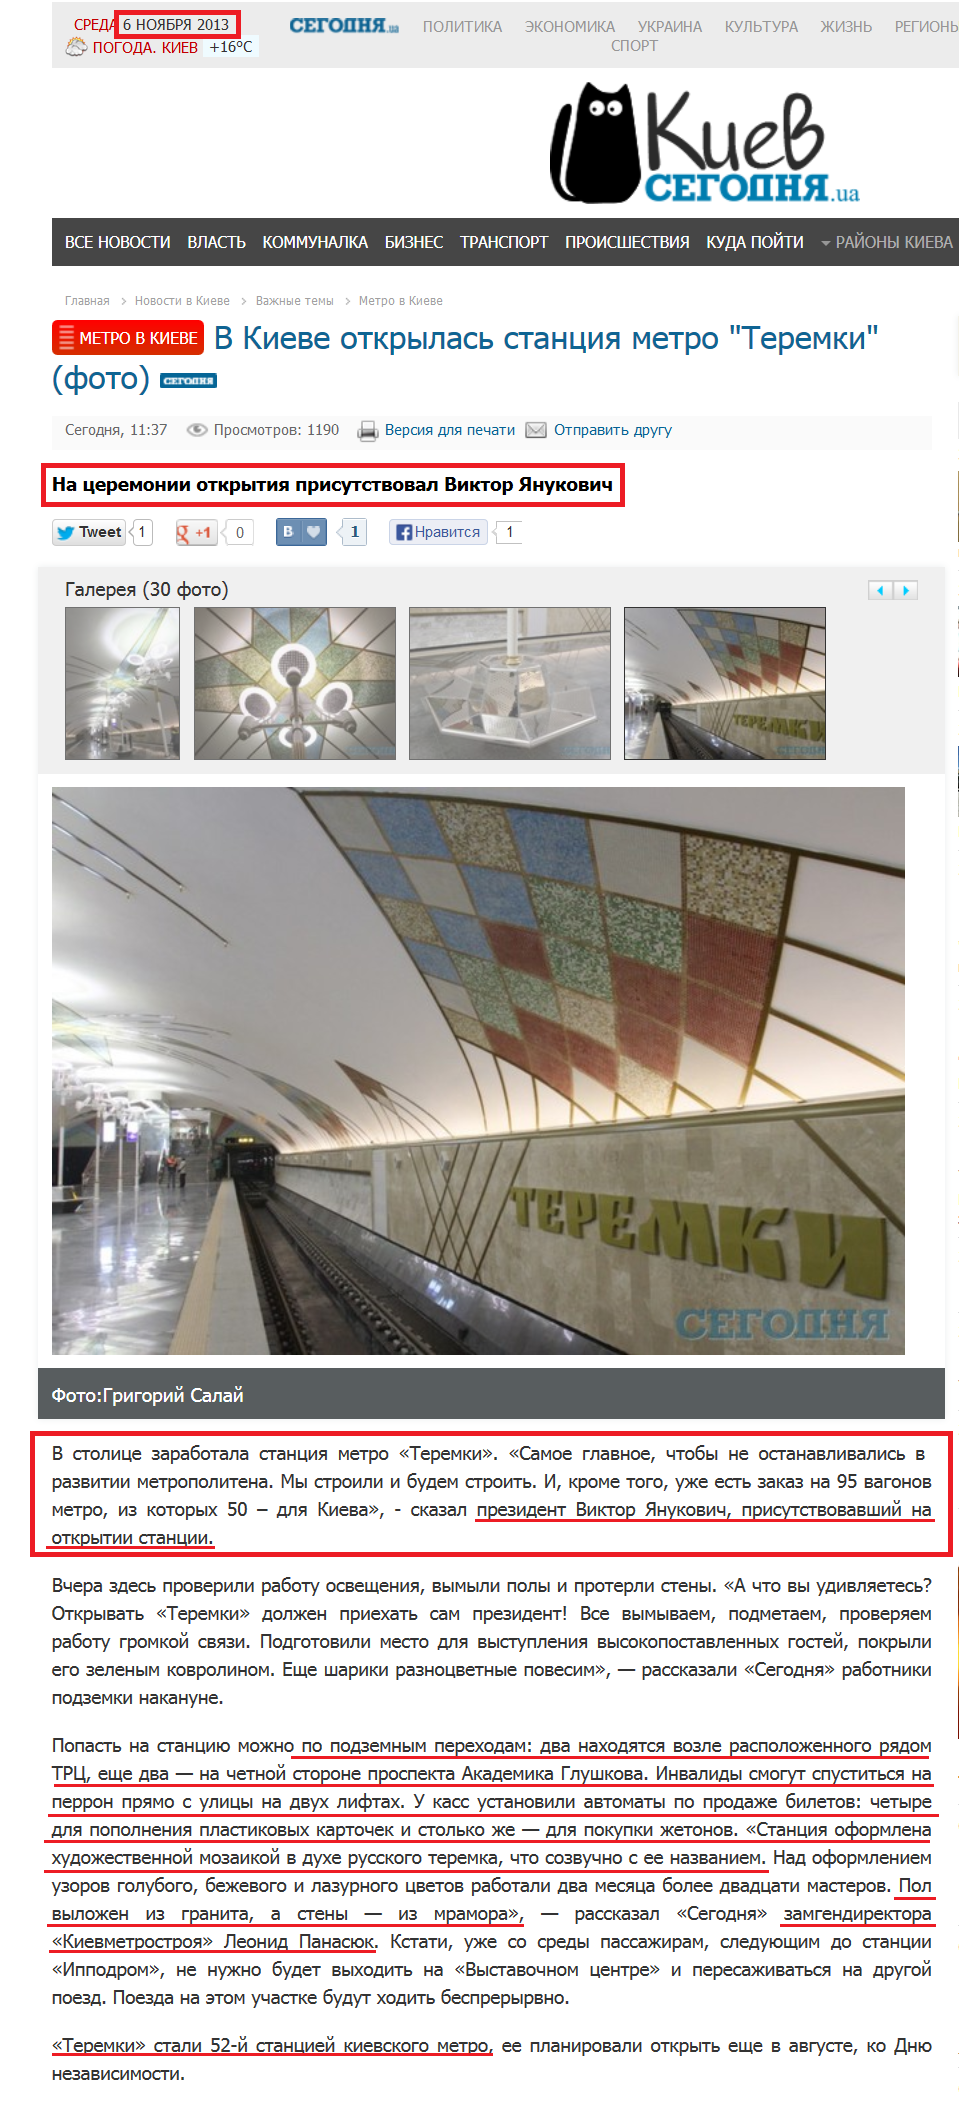 http://kiev.segodnya.ua/khot/metro/v-kieve-otkrylas-stanciya-metro-teremki-473200.html